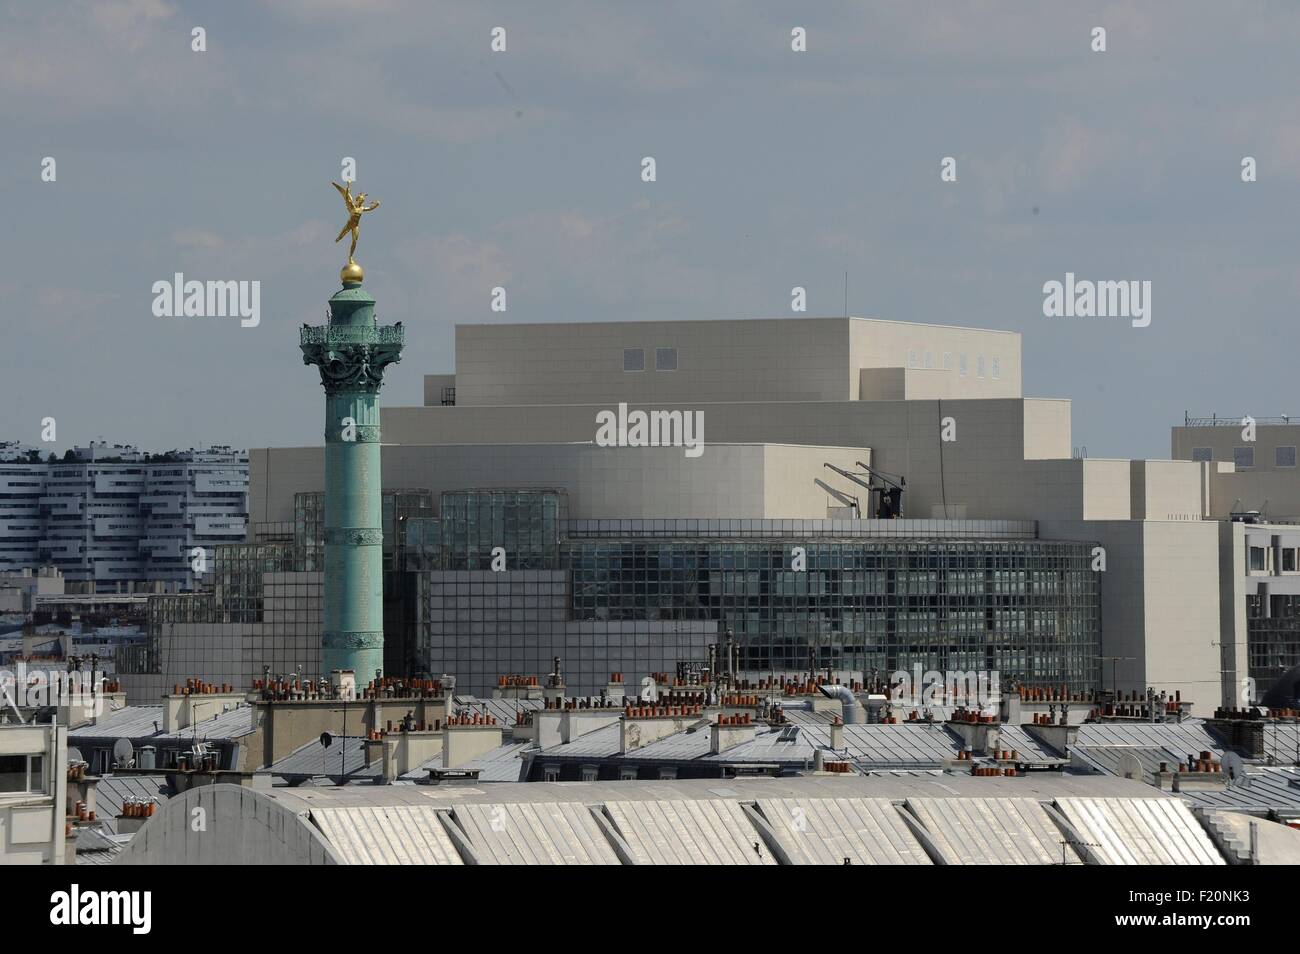 France, Paris, le génie de la Bastille, Le génie de la liberté est une sculpture en bronze doré d'Auguste Dumont en 1836 et depuis ce temps couronnant le sommet de la Colonne de Juillet, Place de la Bastille à Paris (vue aérienne) Banque D'Images